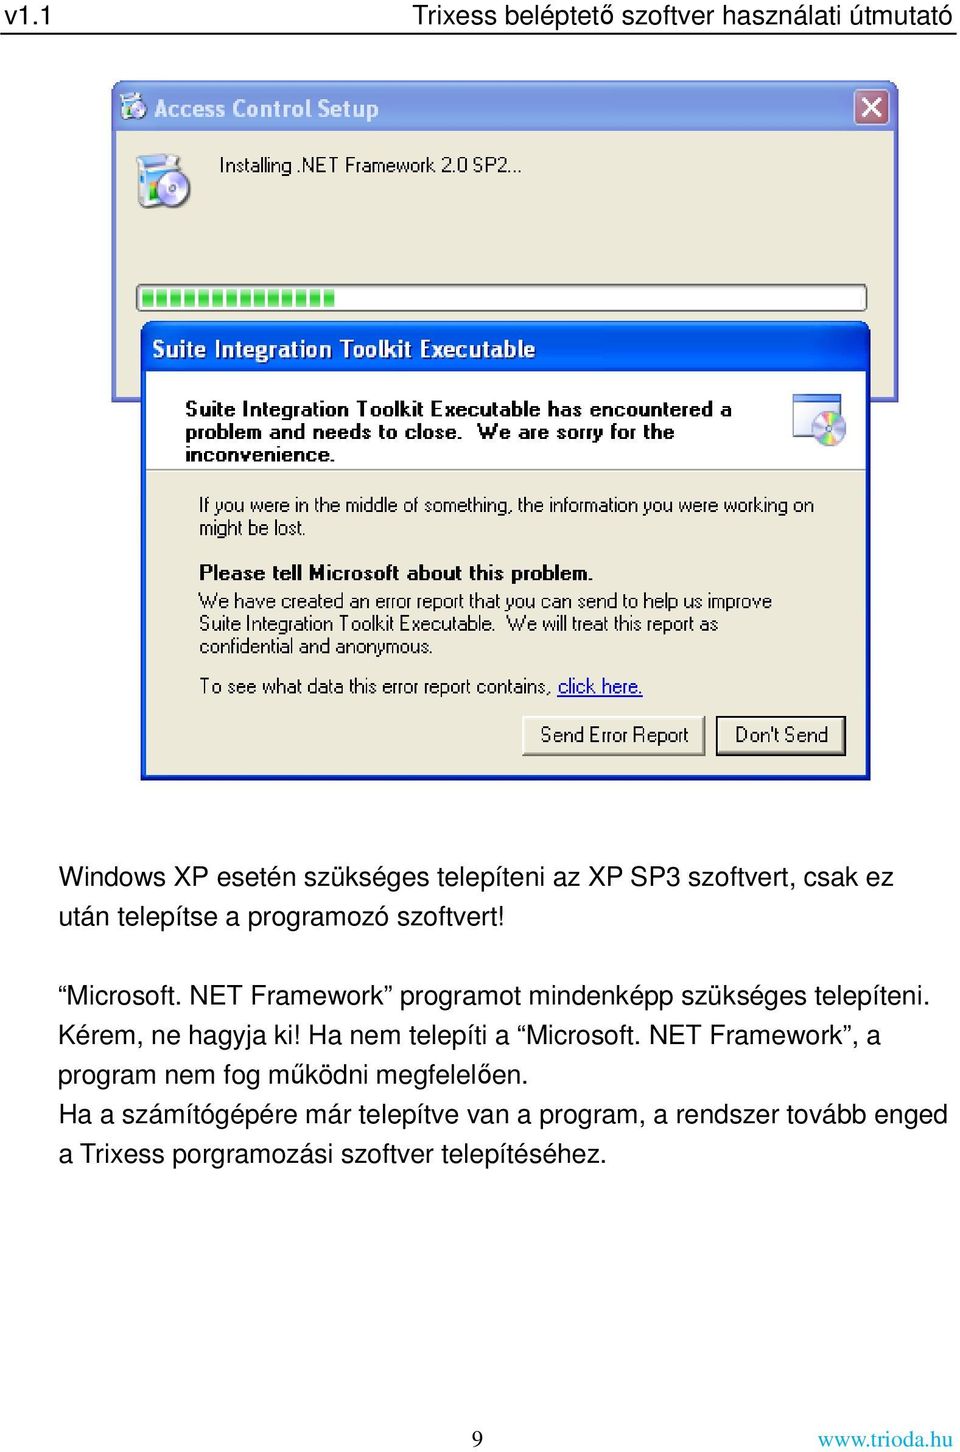 Kérem, ne hagyja ki! Ha nem telepíti a Microsoft. NET Framework, a program nem fog működni megfelelően.